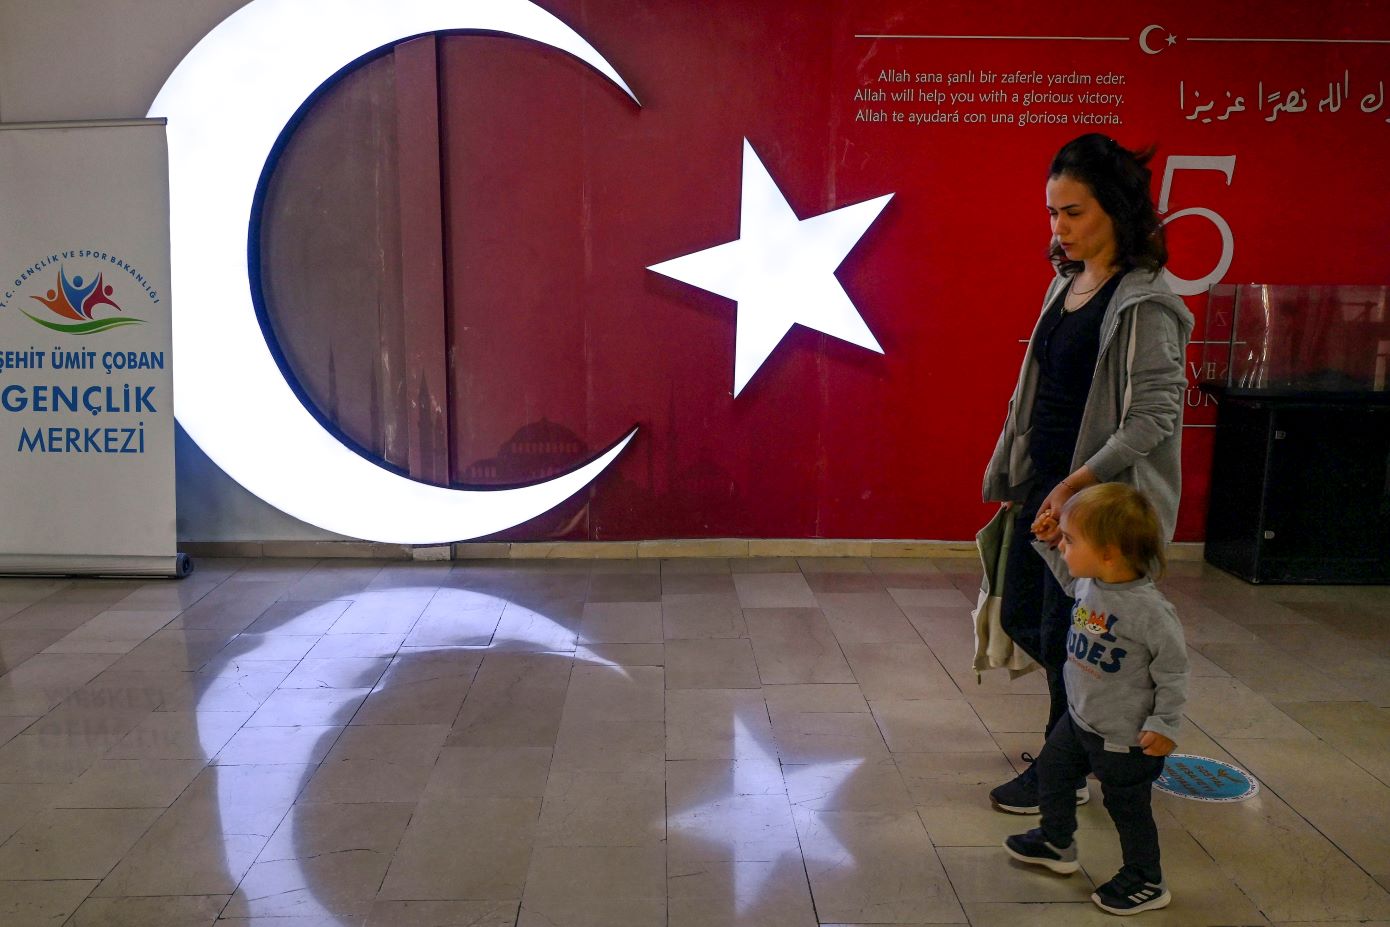 Ολοκληρώθηκε η εκλογική διαδικασία στην Τουρκία &#8211; «Να συμβάλλει στην έναρξη μίας νέας εποχής στη χώρα», είπε ο Ερντογάν